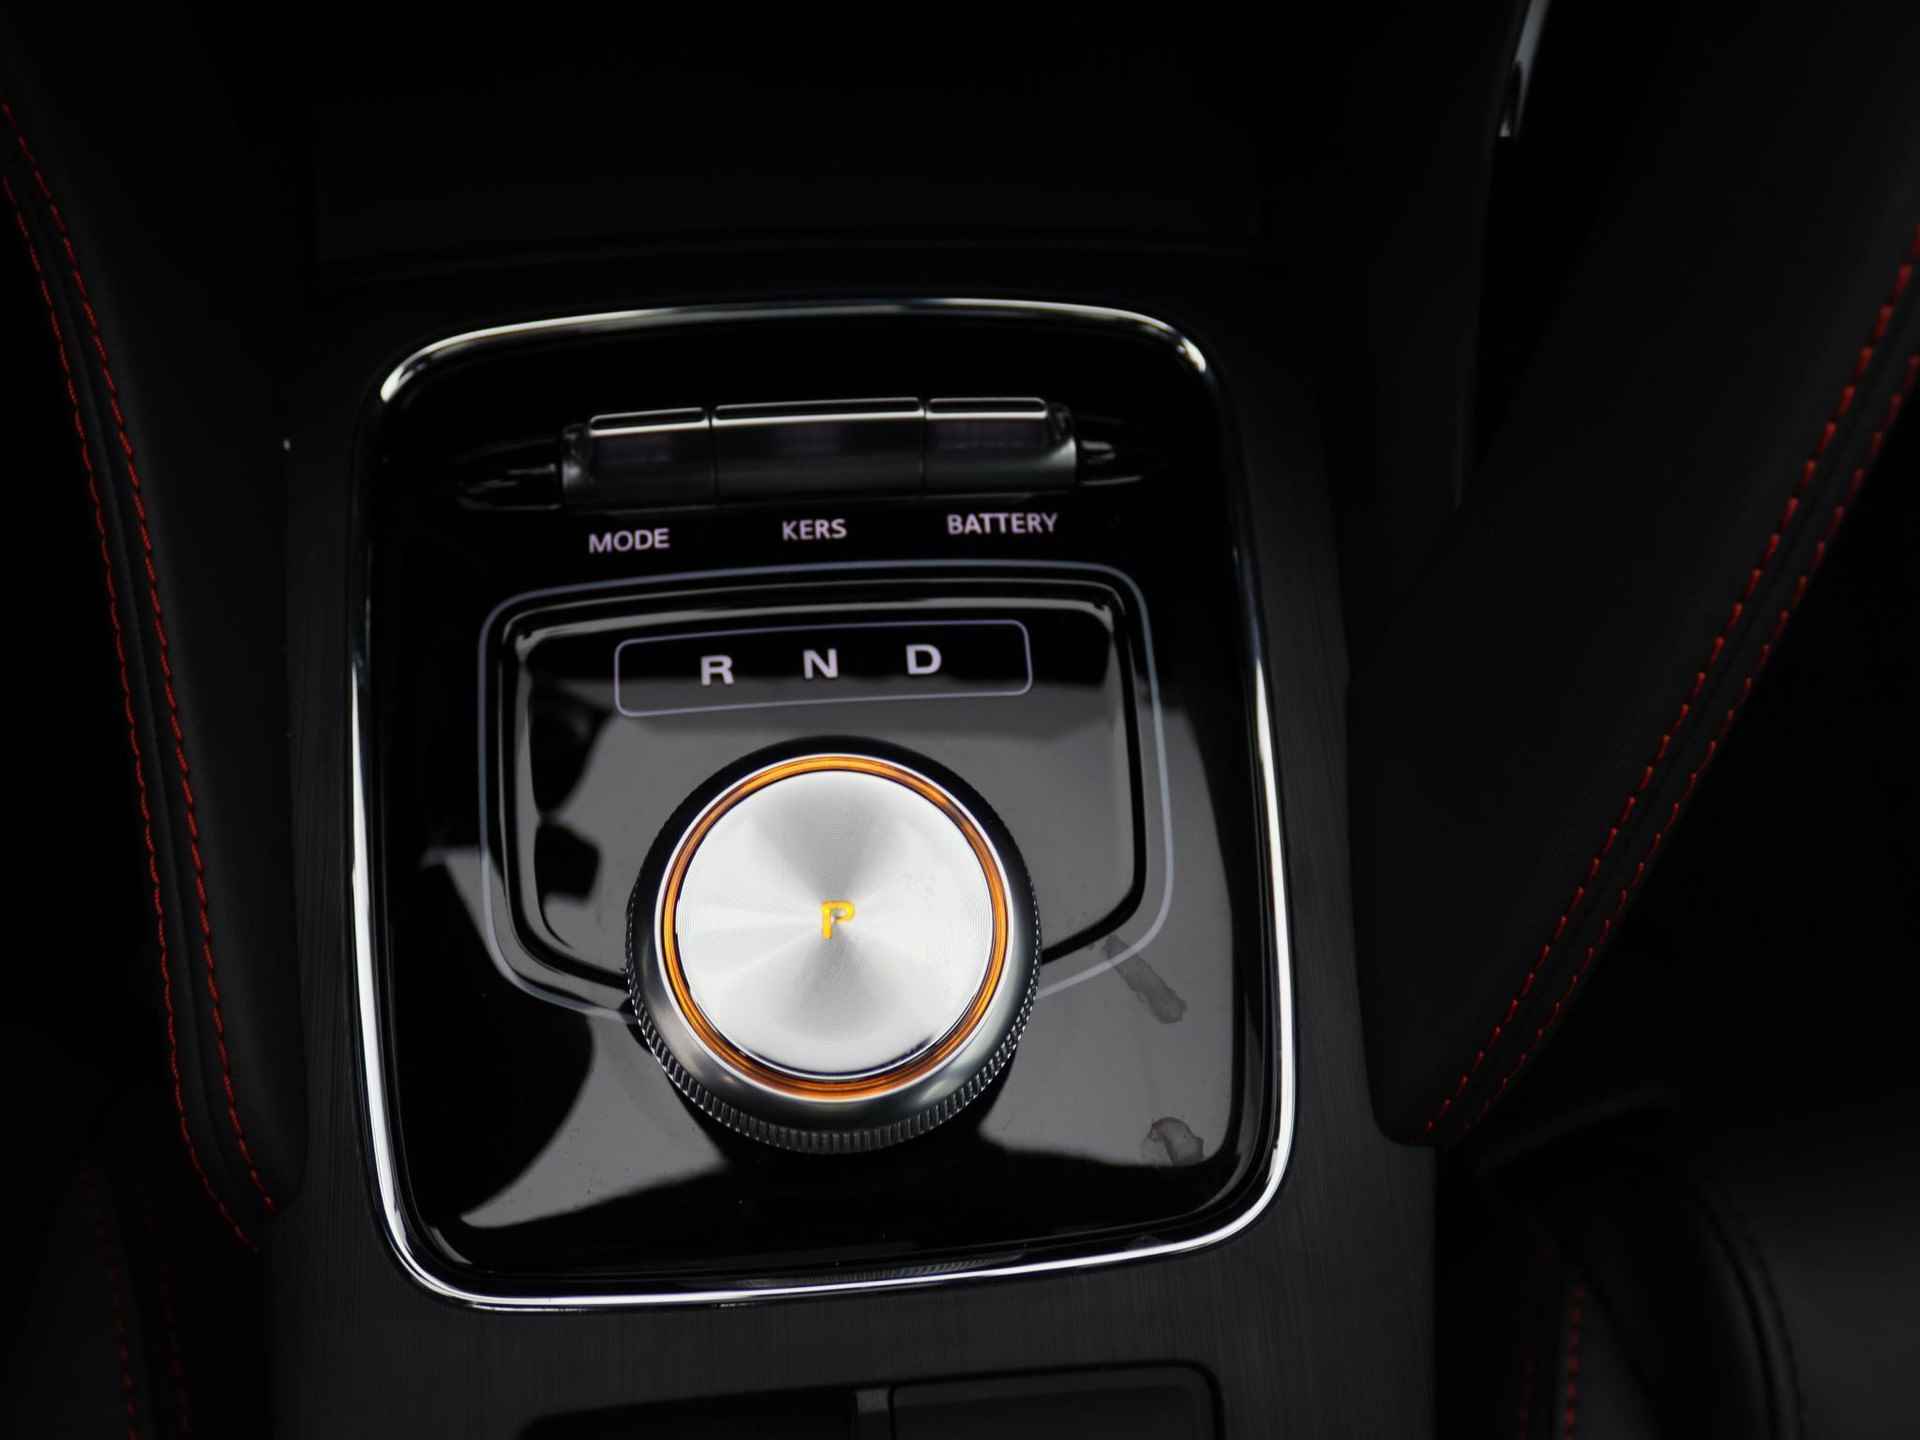 MG ZS EV Standard Range Luxury | 320 km WLTP | Navigatie | Panorama dak | 7 jaar 150.000 km garantie | Nu €2500,- Upgrade Actie Voordeel! | Wordt in alle kleuren verwacht! - 12/19